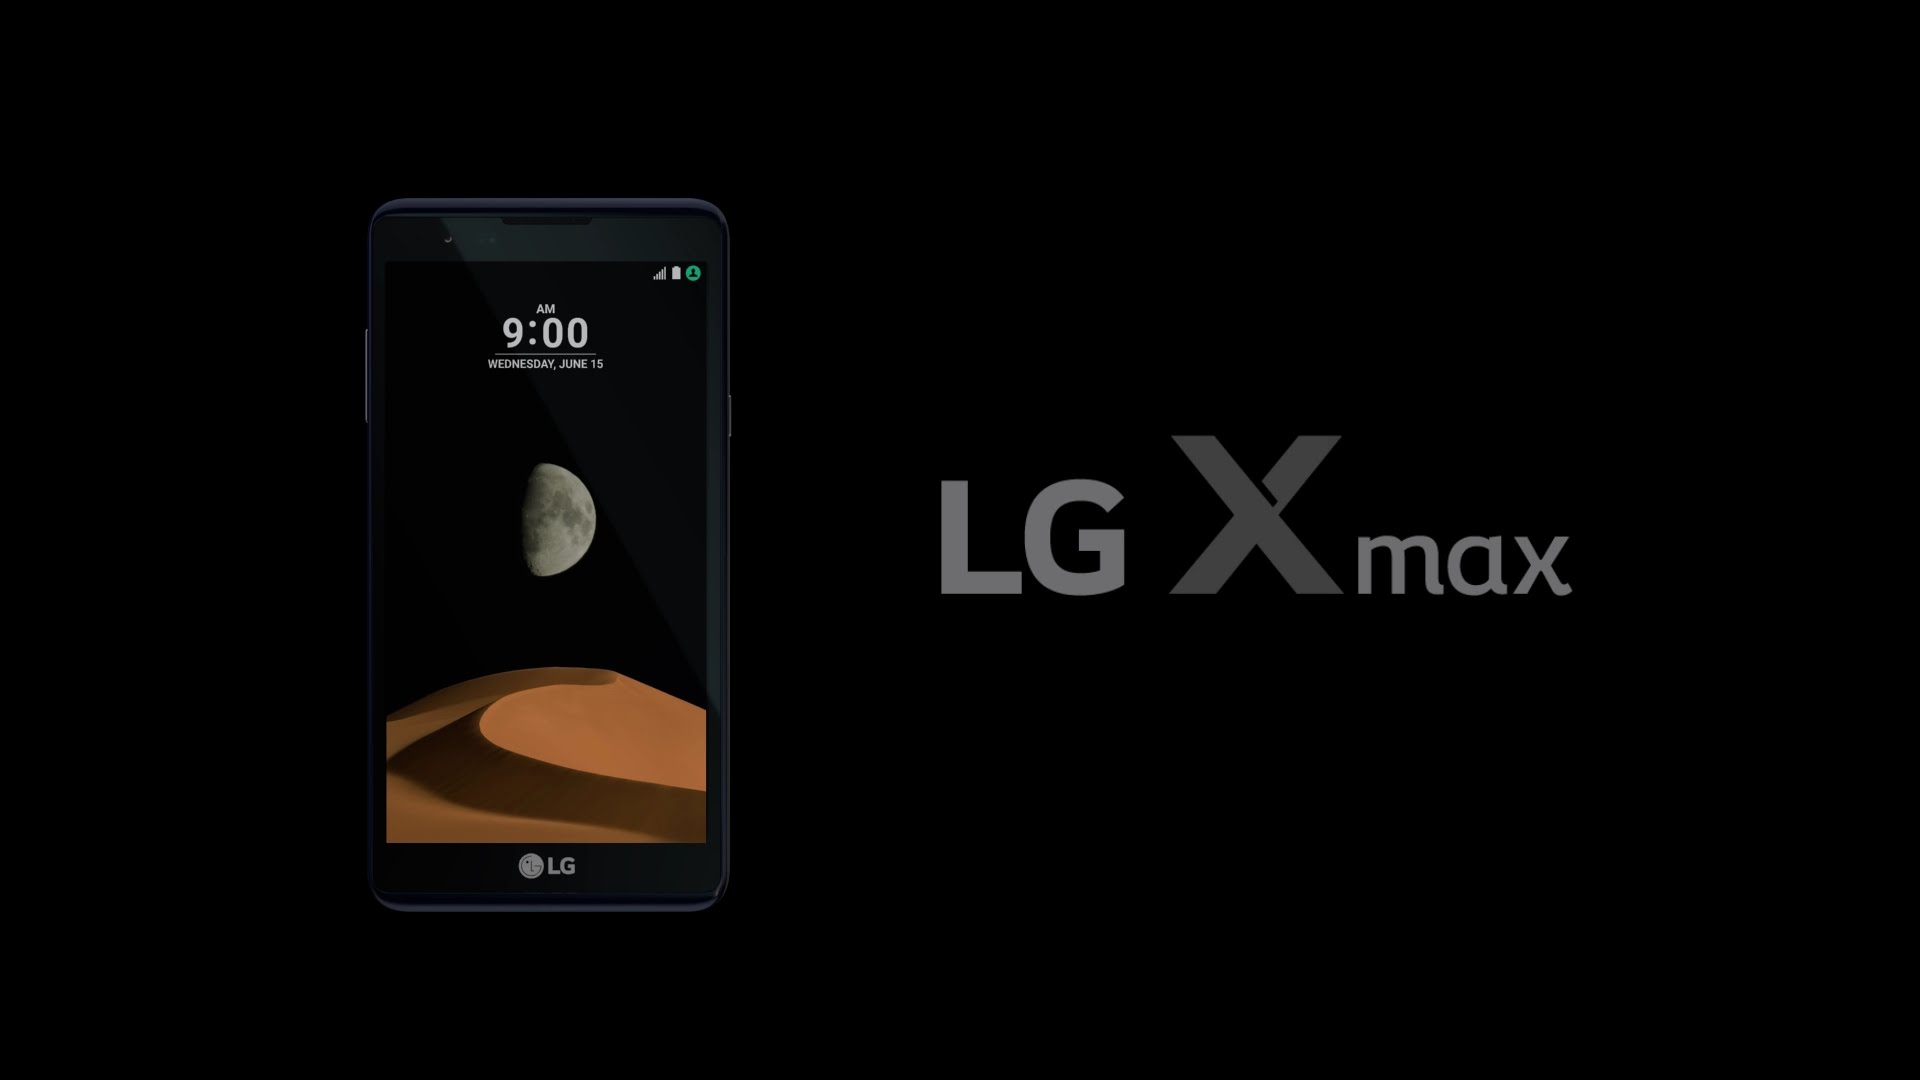 LG X max